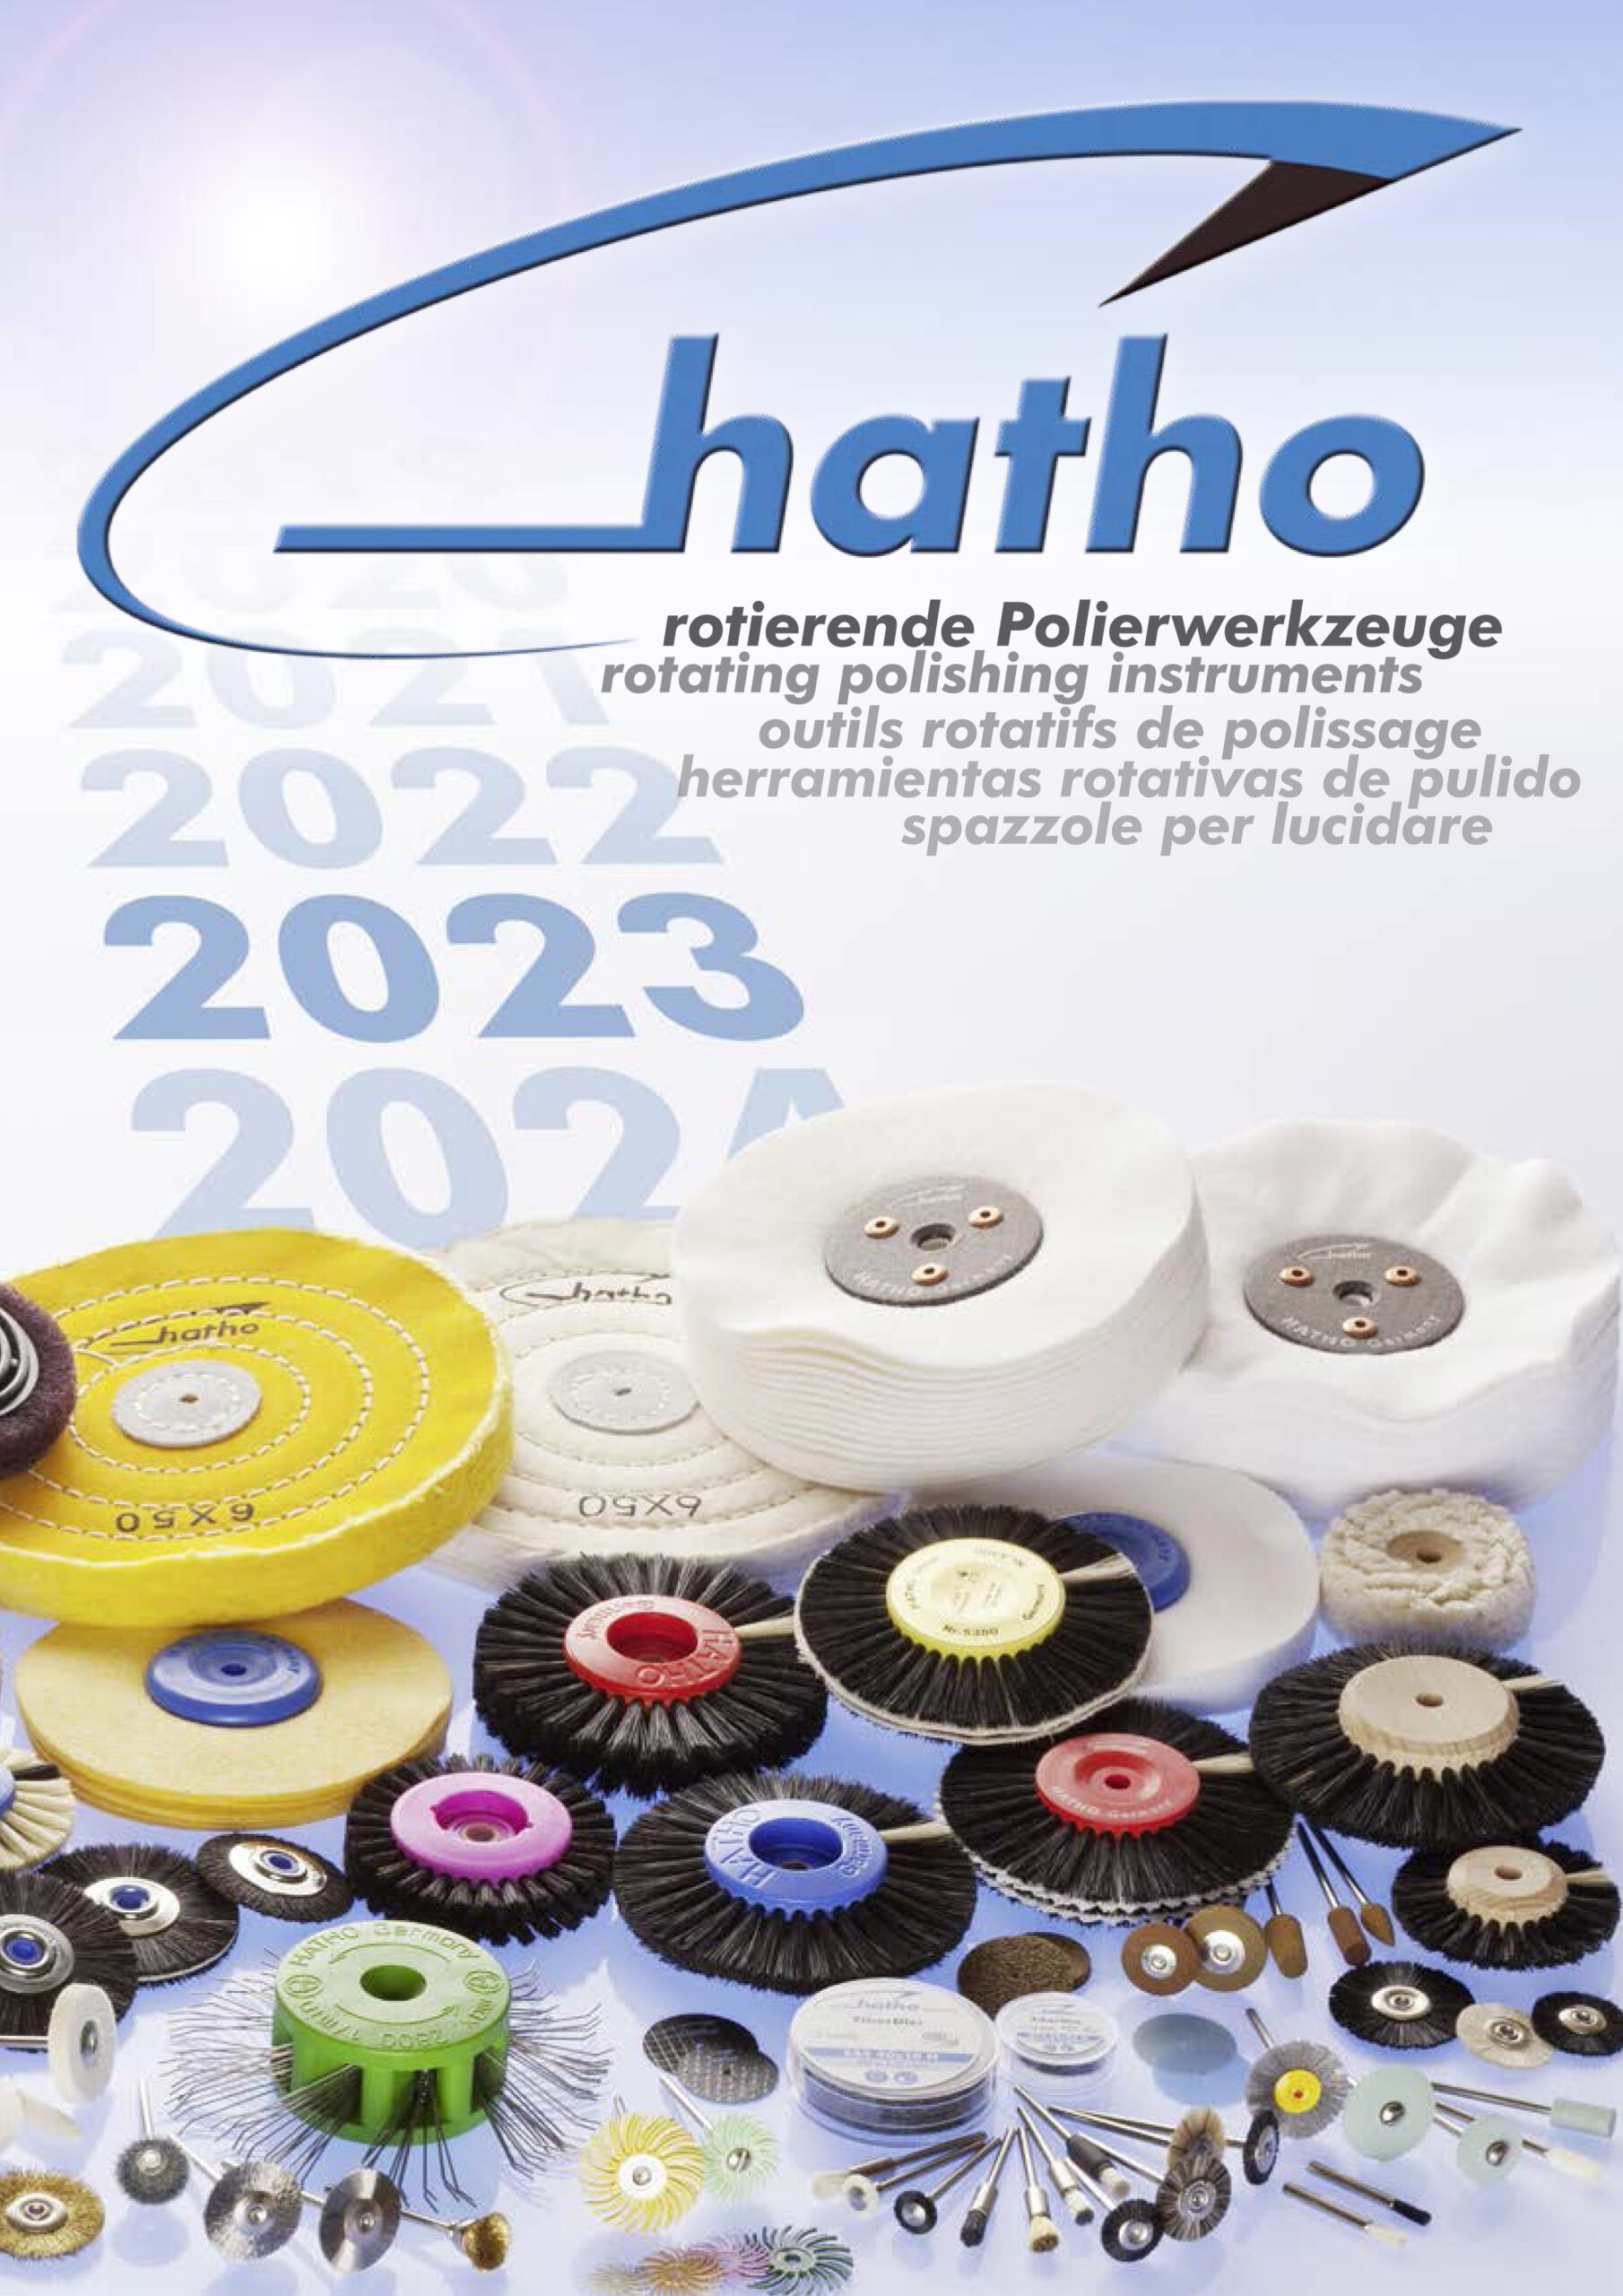 Hatho rotierende Polierwerkzeuge